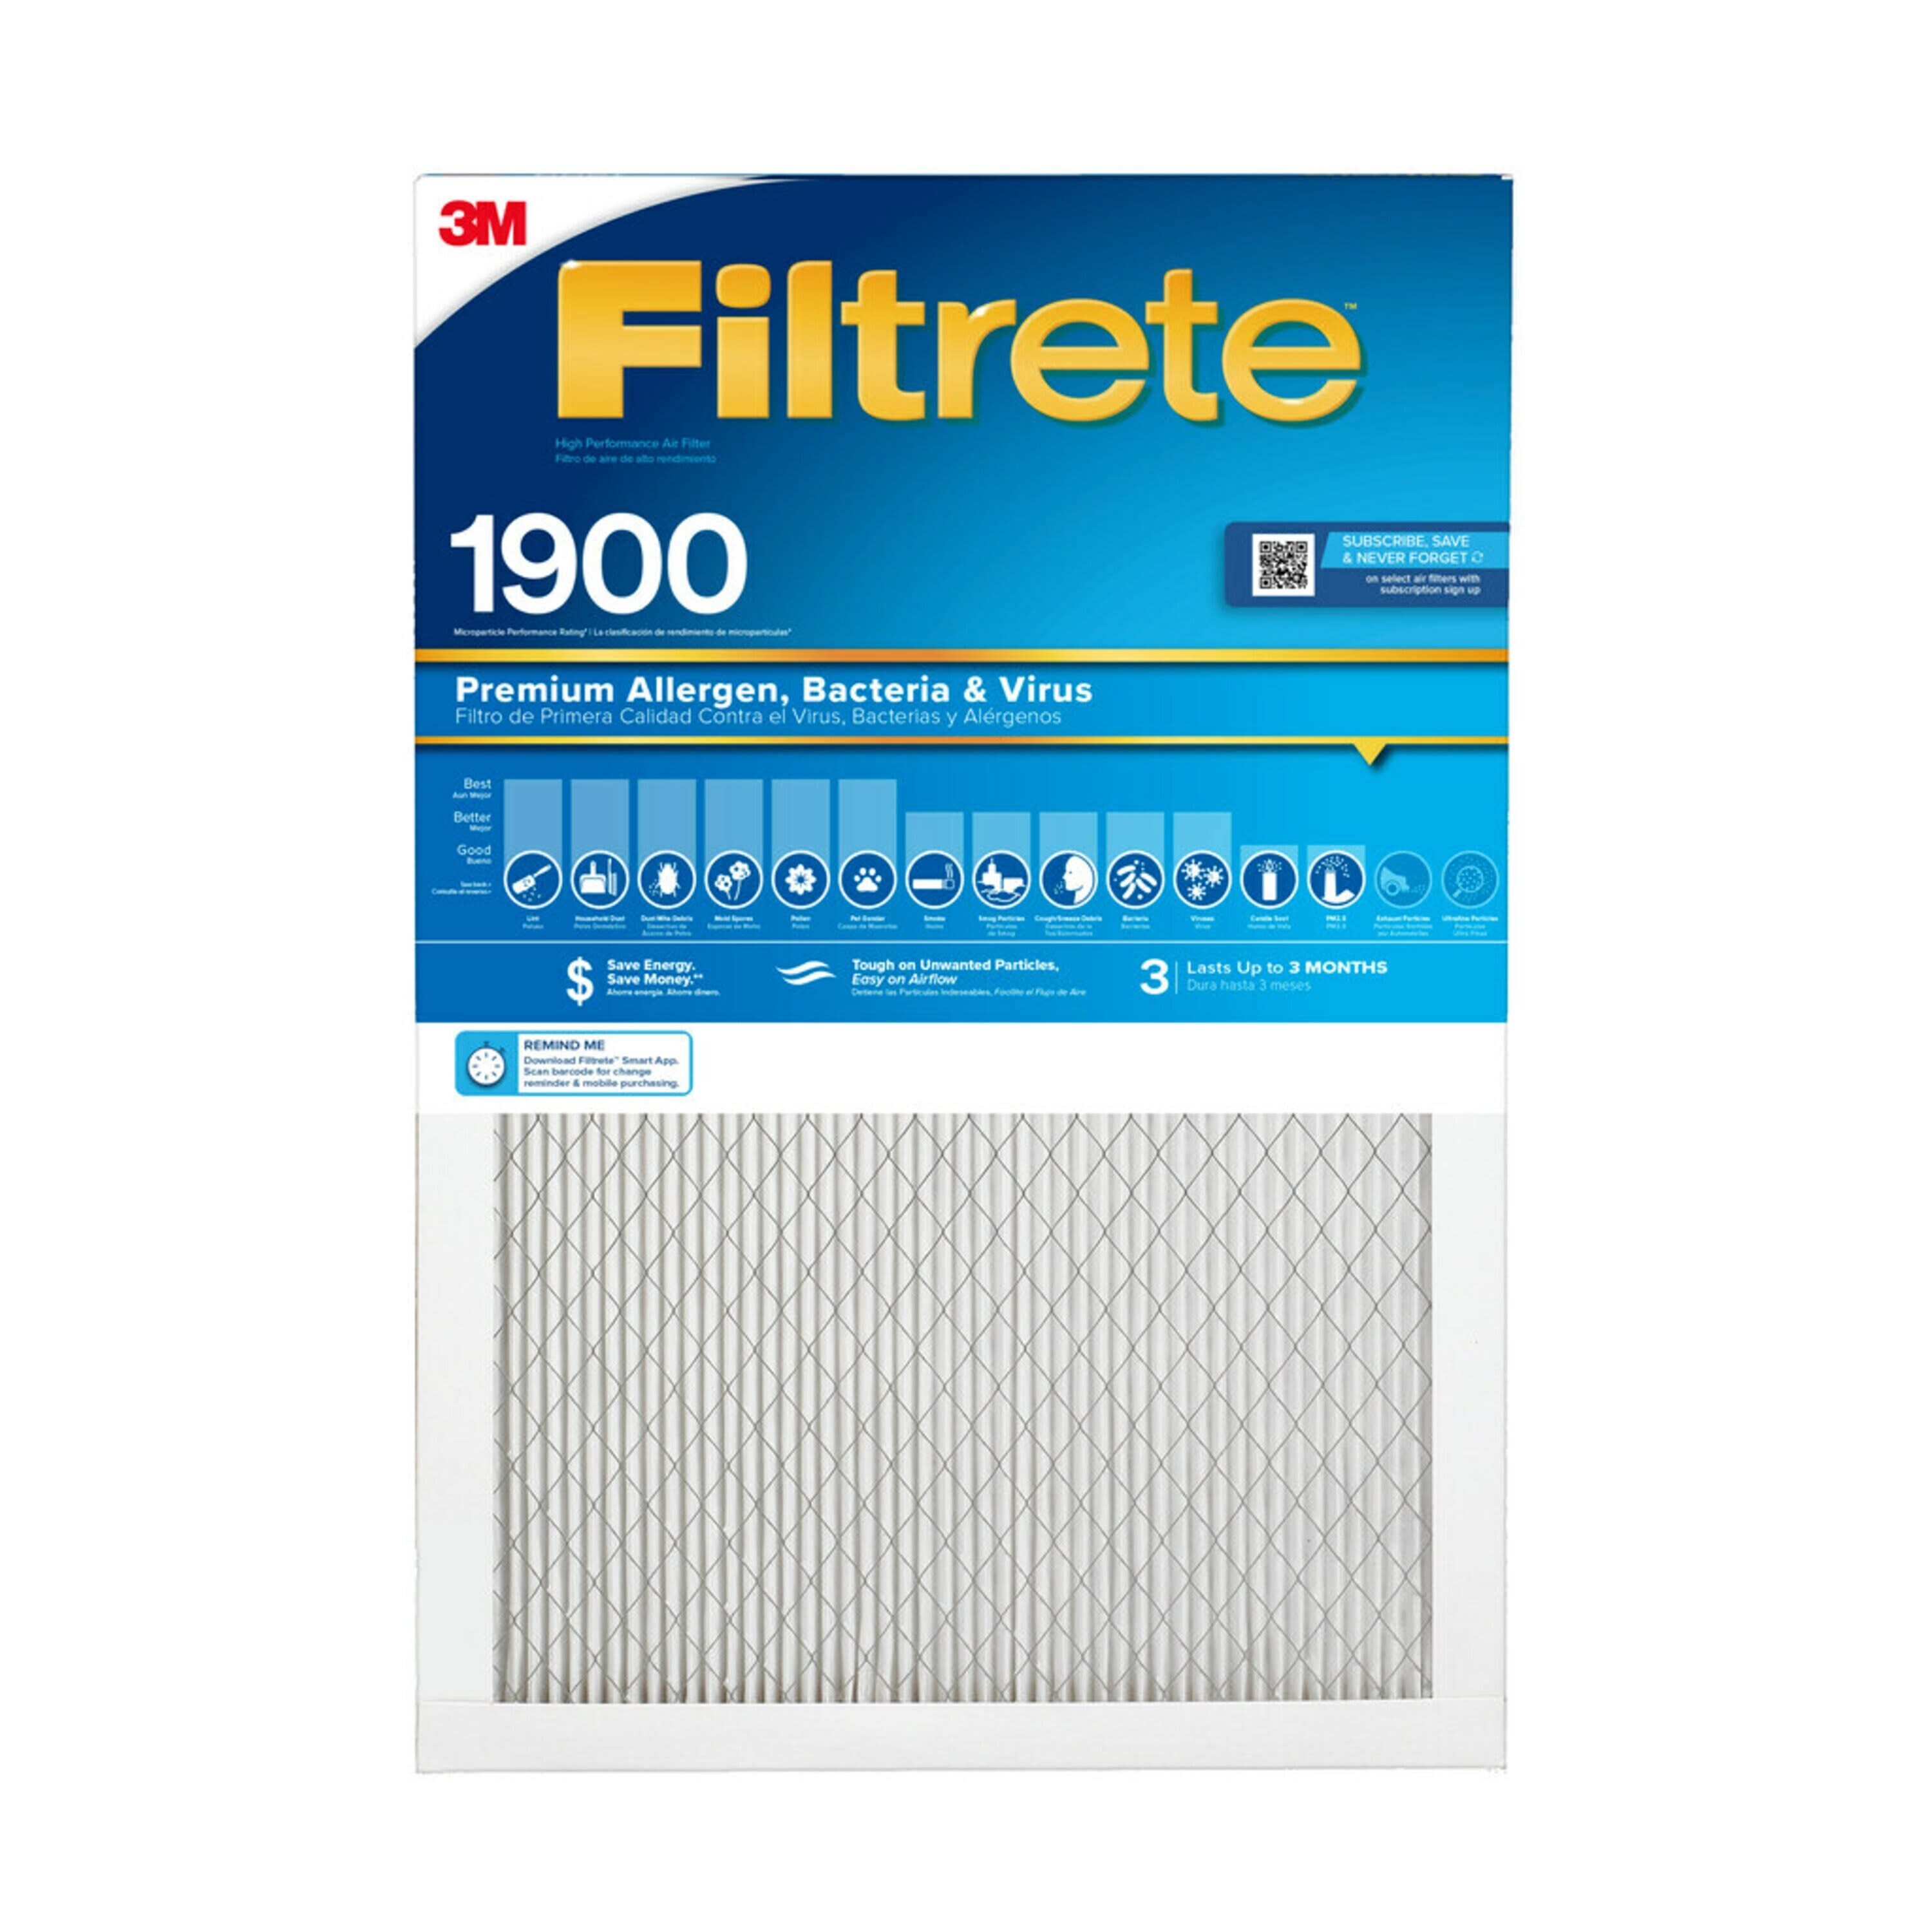 3M Filtrete 68892A Black & Decker VF110 Allergen Vacuum Filter